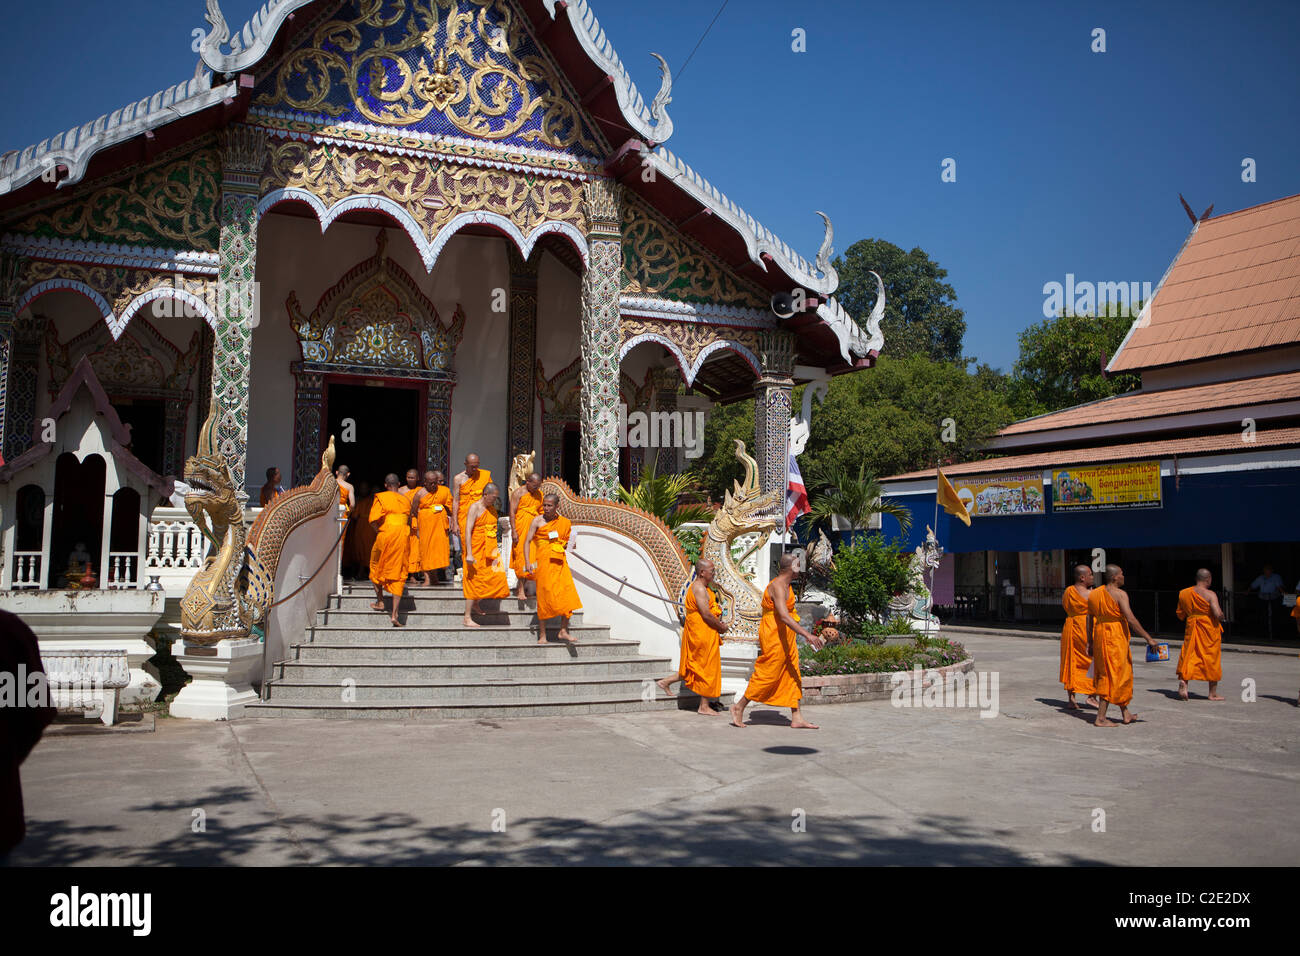 Thai man être moine 'Khon Sook', c'est un rite de passage pour tous les Thai man, Wat Chedi Sao, Lampang, Thaïlande Banque D'Images